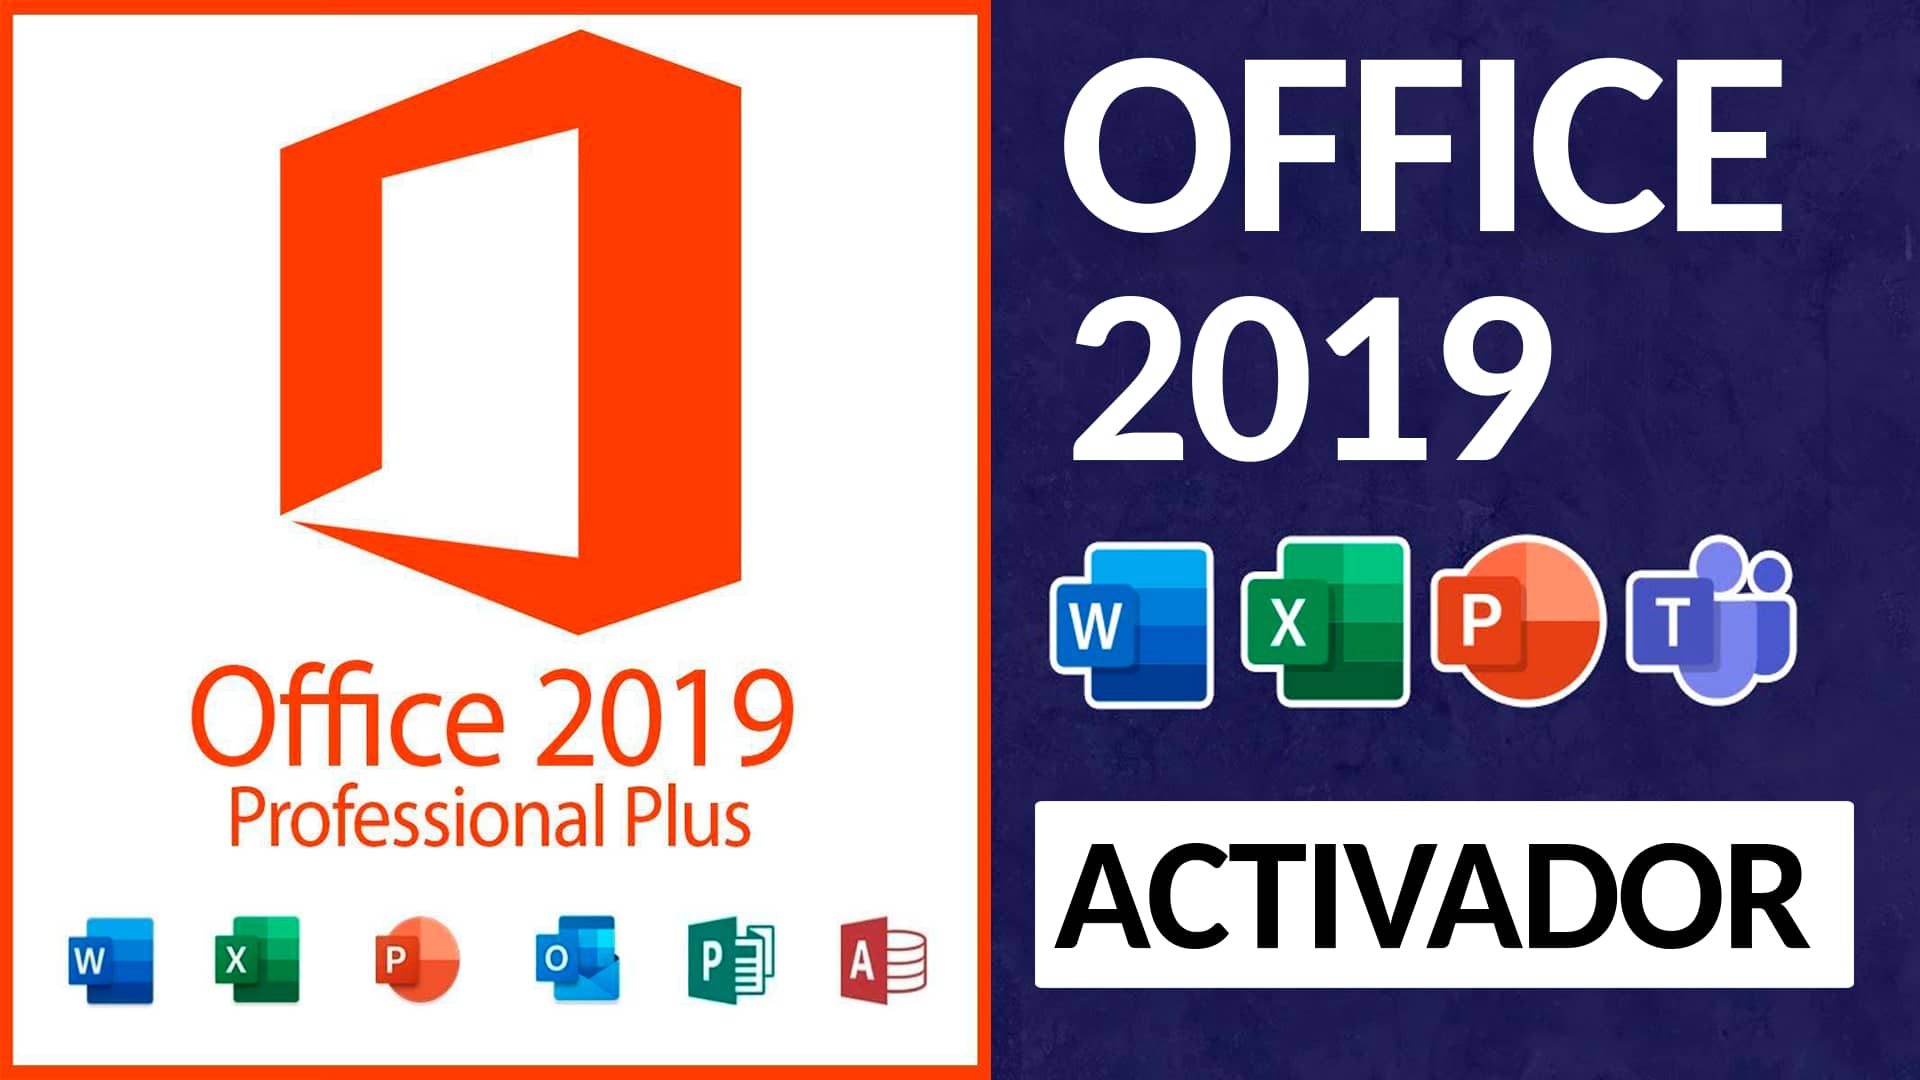 Activacion Office 2019 Activador De Office 2019 Para Todas Las Versiones Activar Office 2019 9650